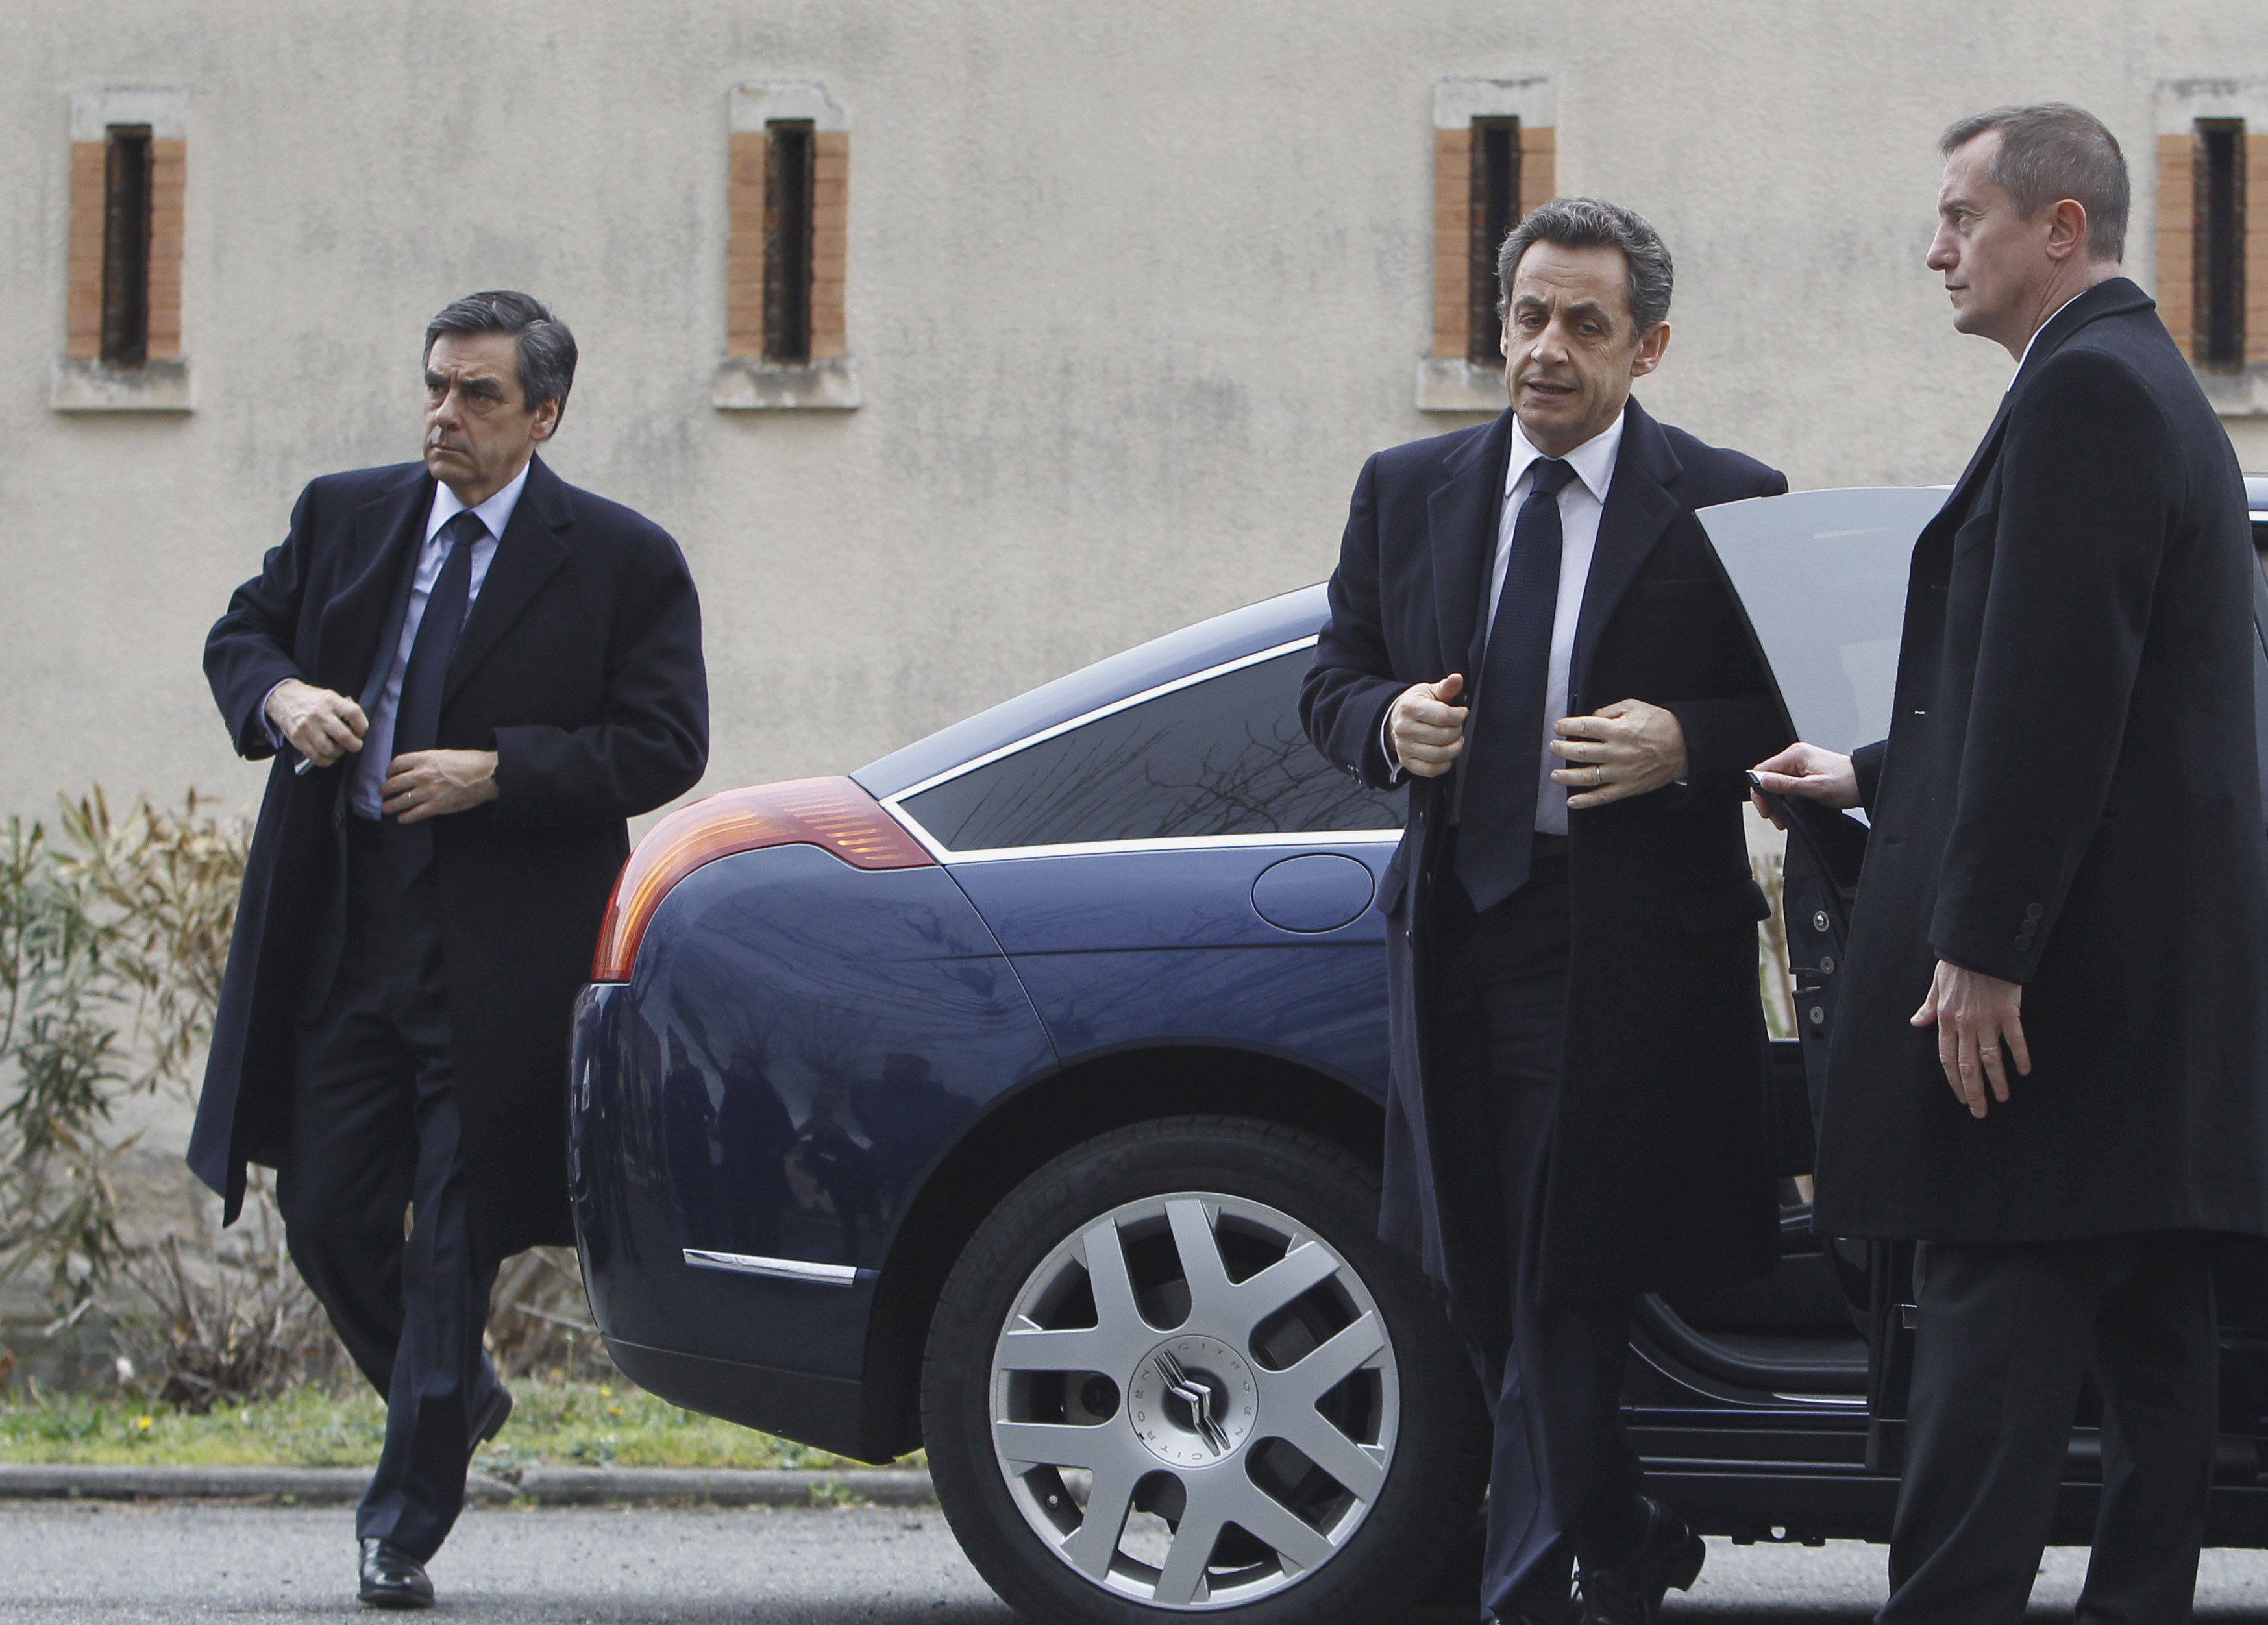 President Sarkozy kom till platsen, som har varit världens mest uppmärksammade under störra delen av veckan, och uttryckte sitt medlidande till de omkomnas anhöriga.